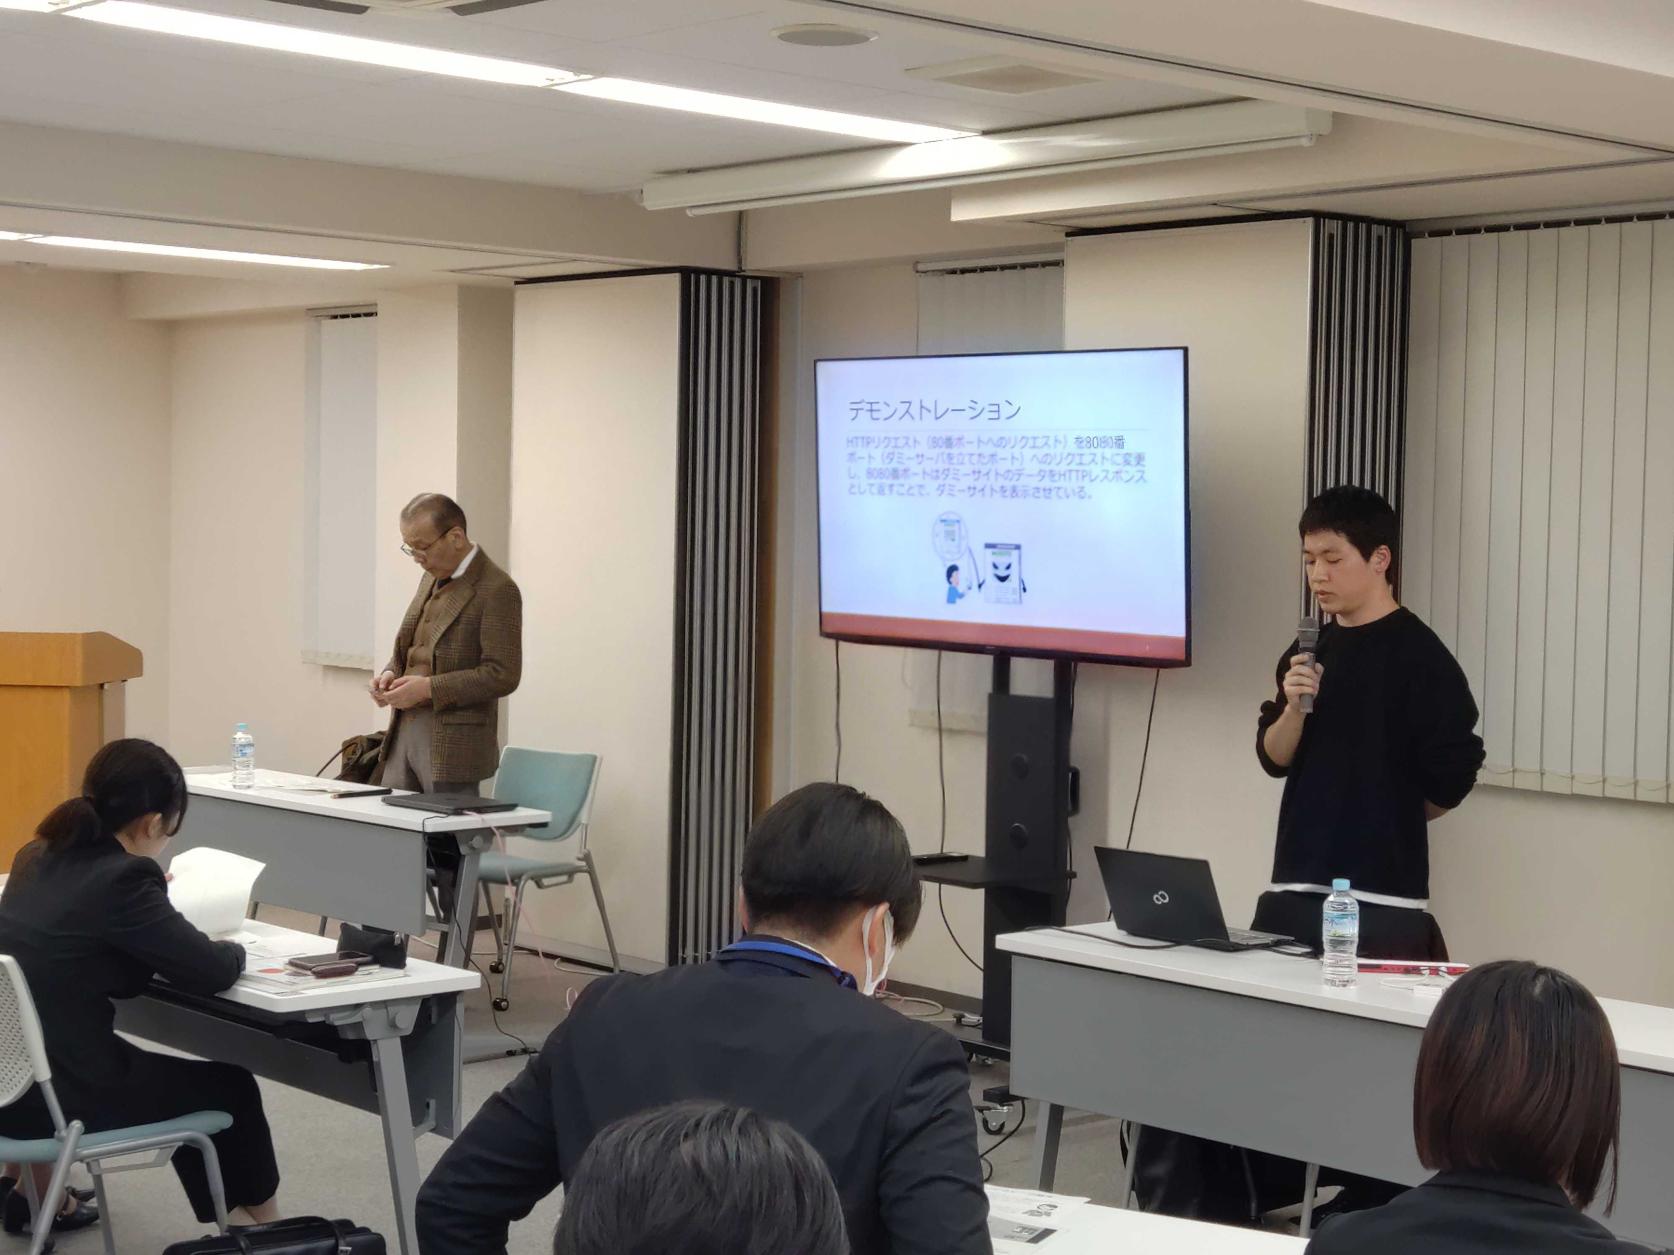 応用情報工学科3年の金子巧実さんが千葉県警察と合同で、東京ベイ信用金庫の 新人職員研修にて「フリーWi-Fiの危険性について」の講演を行いました。